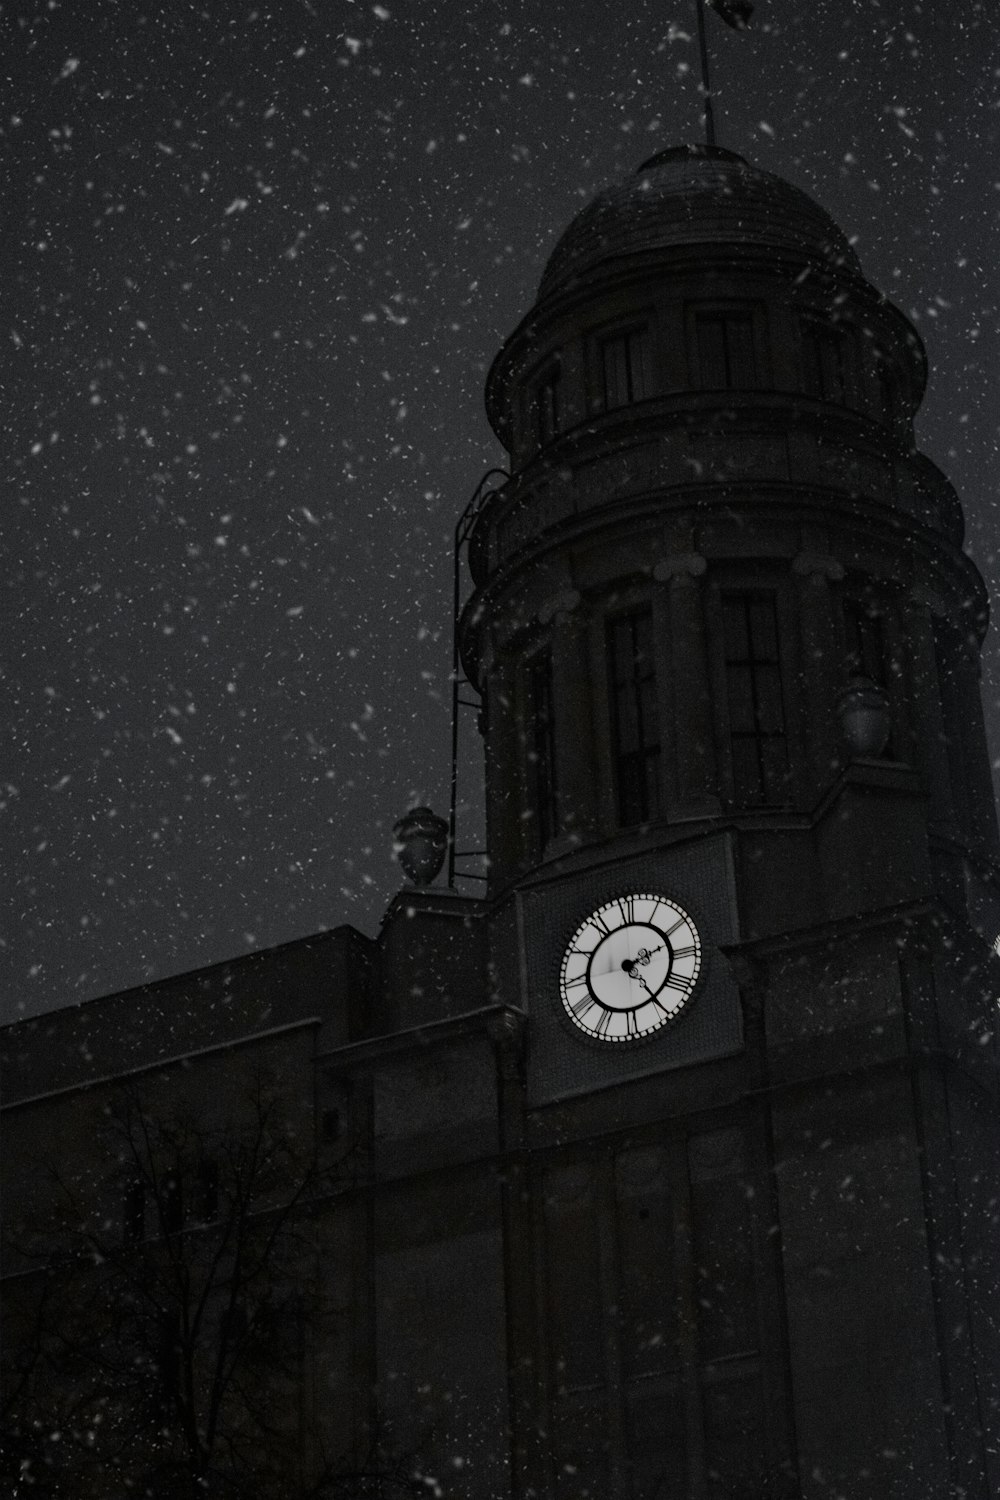 Eine Uhr auf einem Gebäude im Schnee